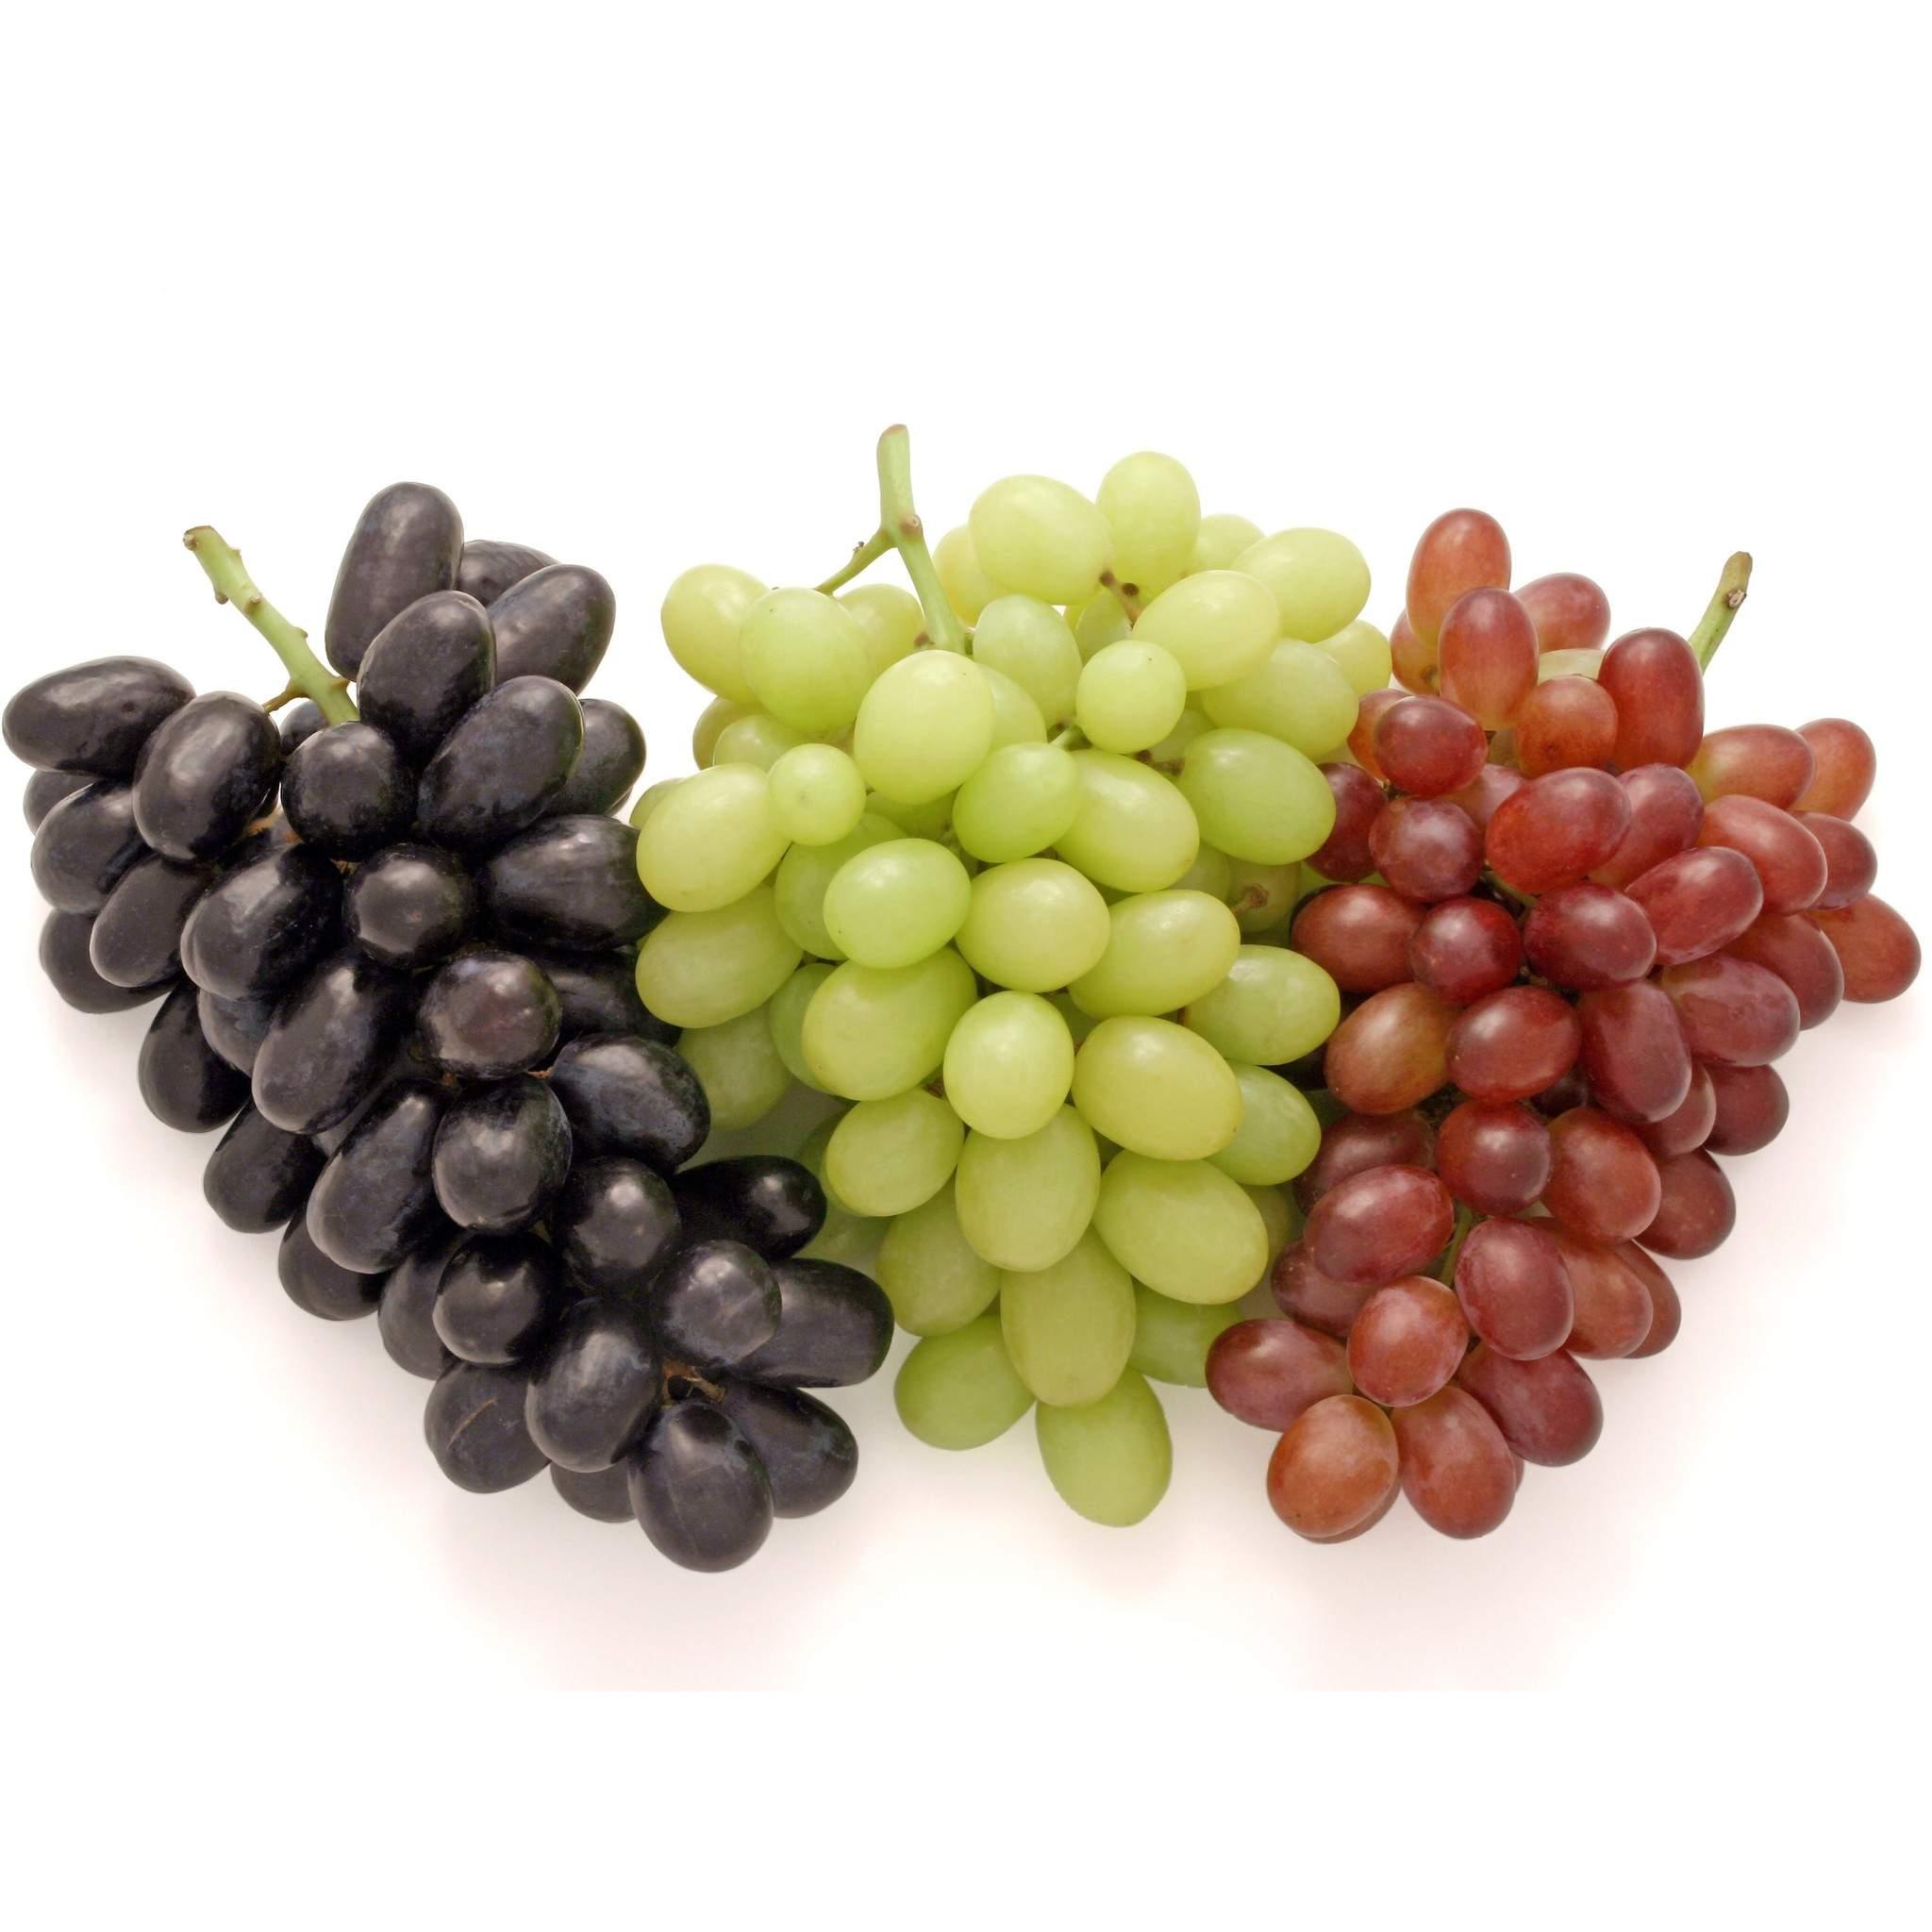 Plodovi grožđa se dijele na crvene, crne i bijele - Avaz